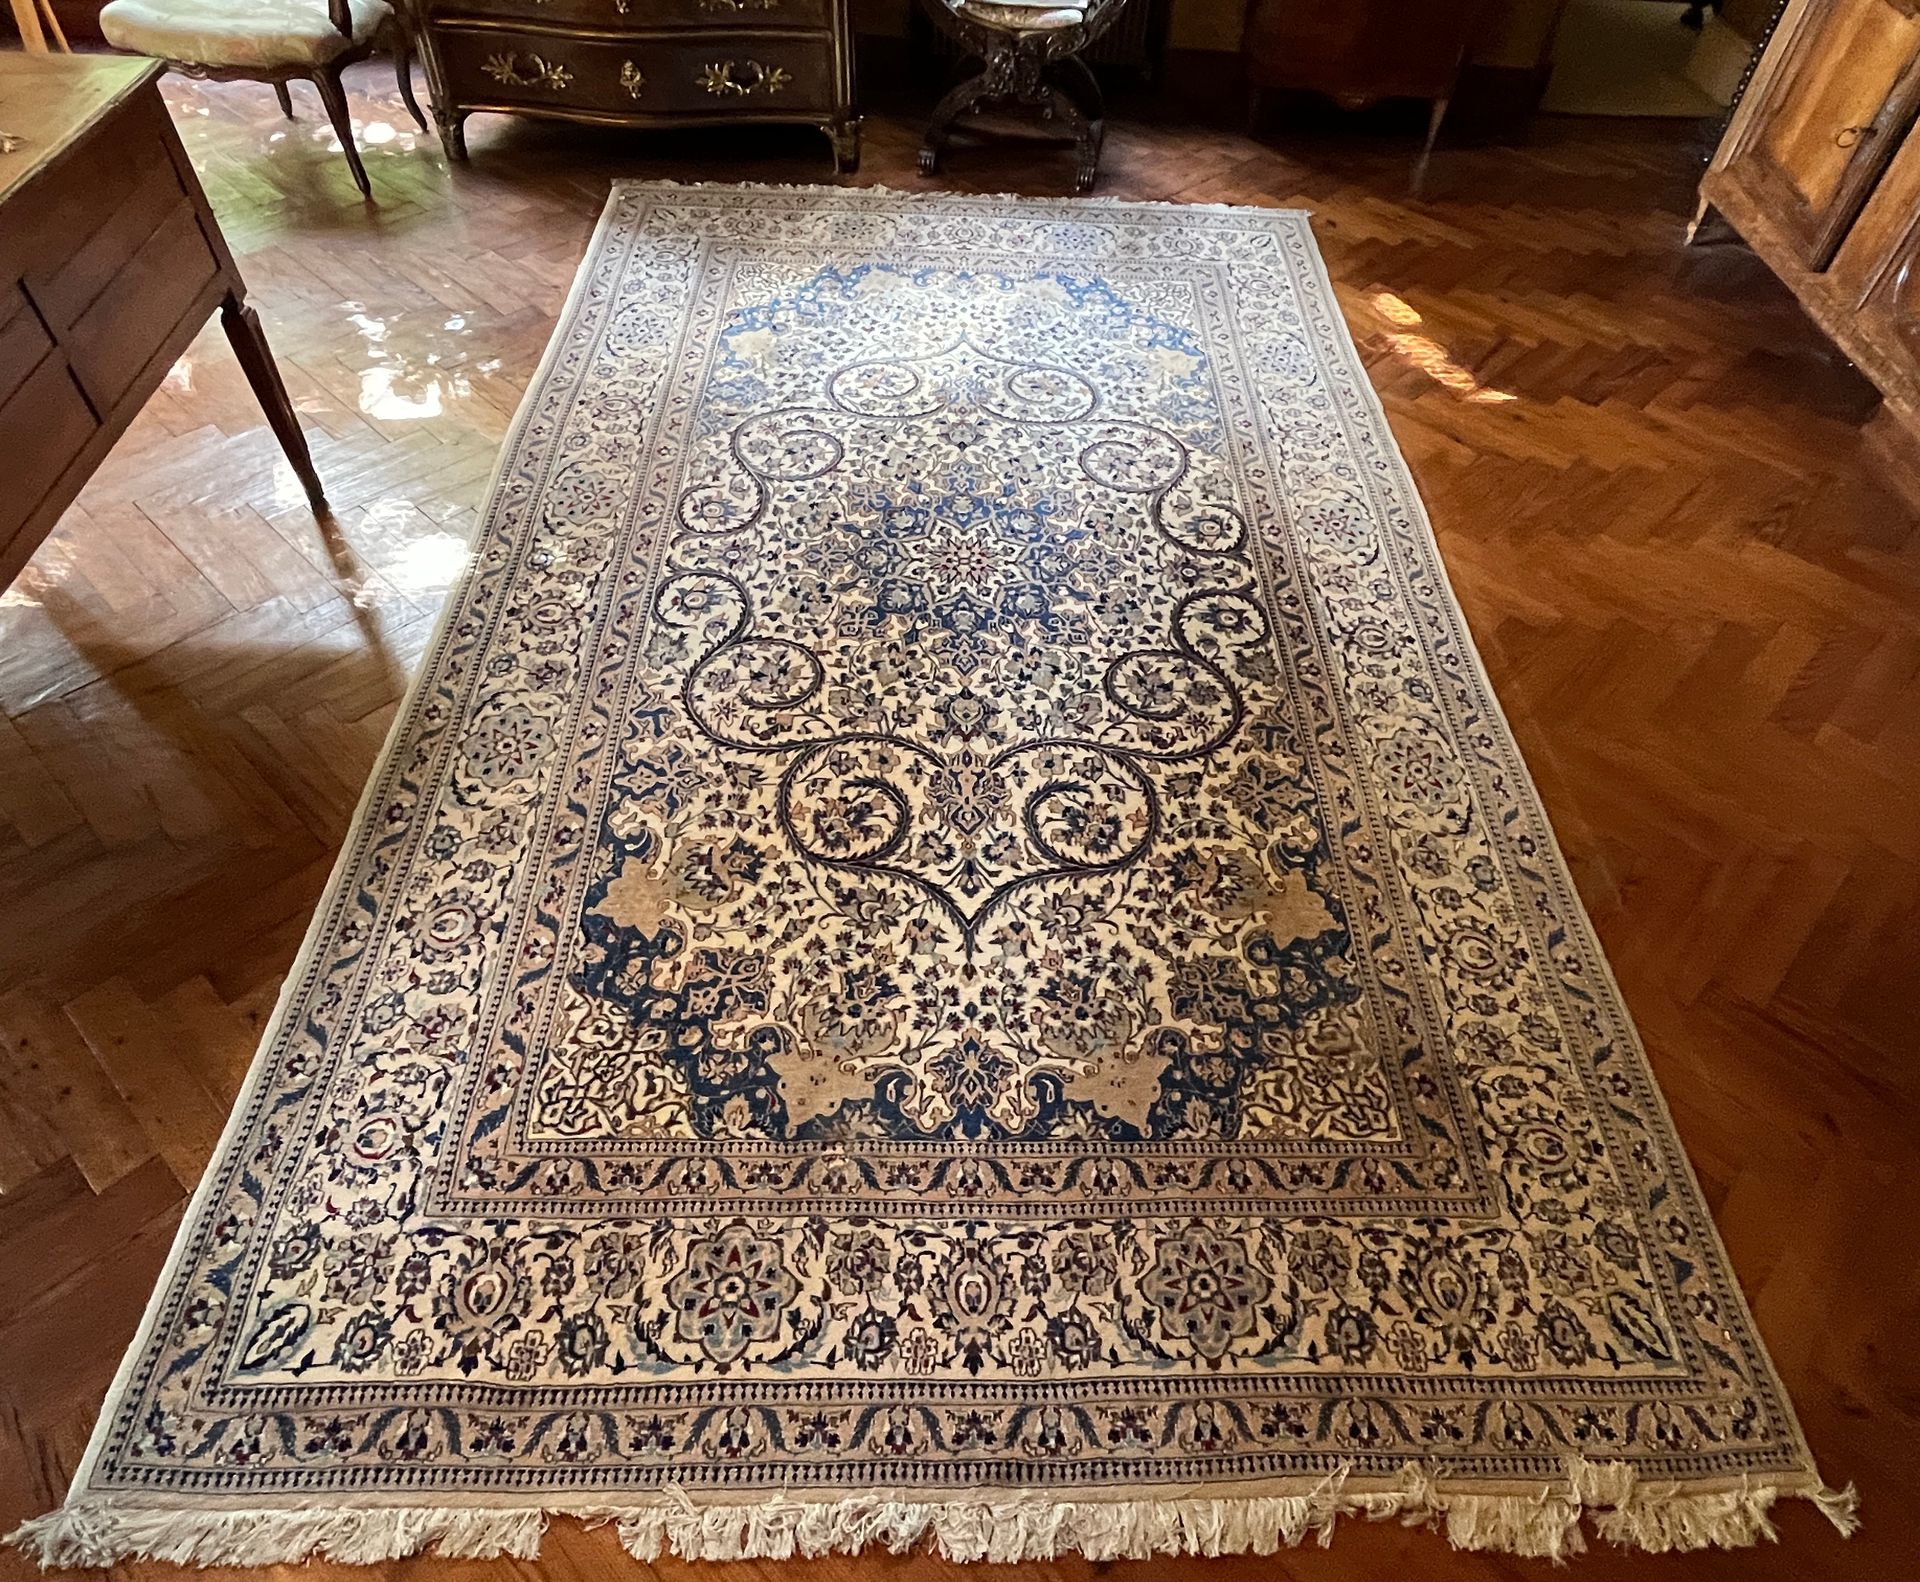 Null 84. Gran alfombra persa, MELAHIR

Lana y seda

Ornamentado con volutas y fl&hellip;